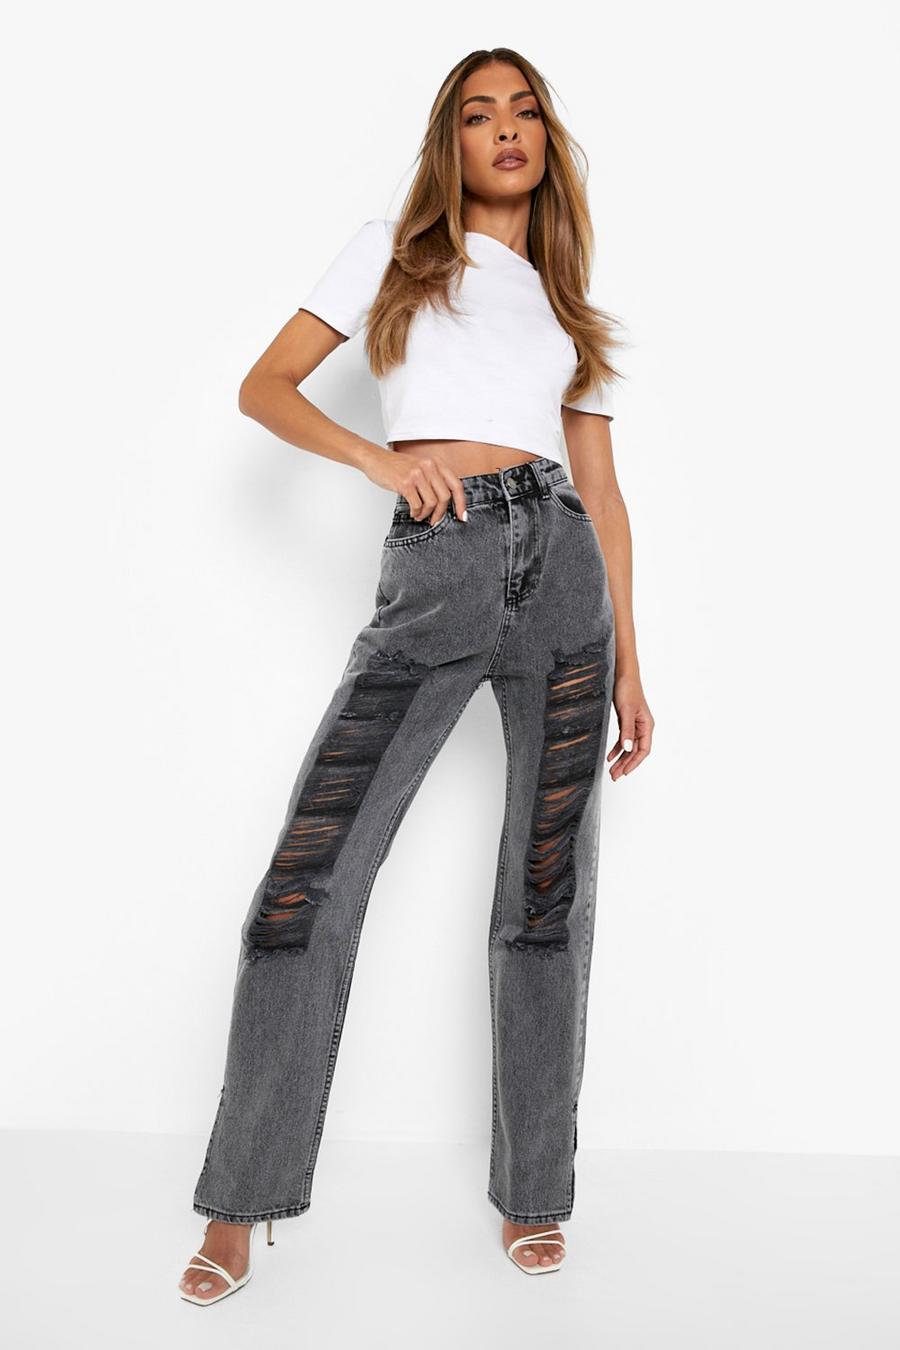 אפור gris ג'ינס High Waist עם קרעים בירך ושסע במכפלת